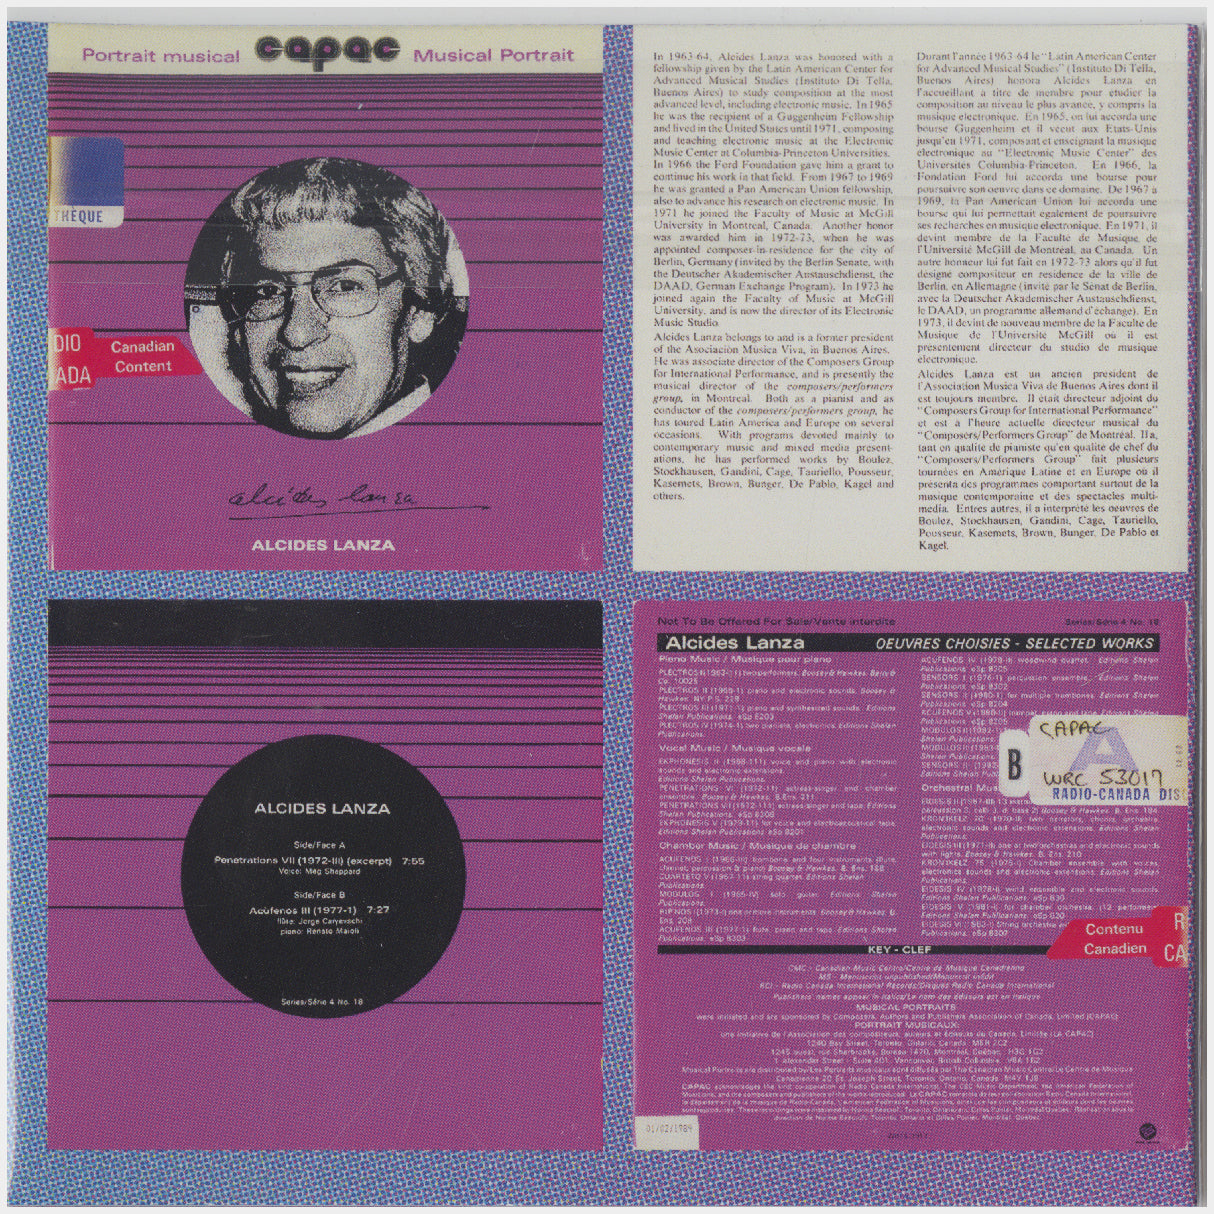 [CP 295 CD] CAPAC "Musical Portrait" Series 4 & 5